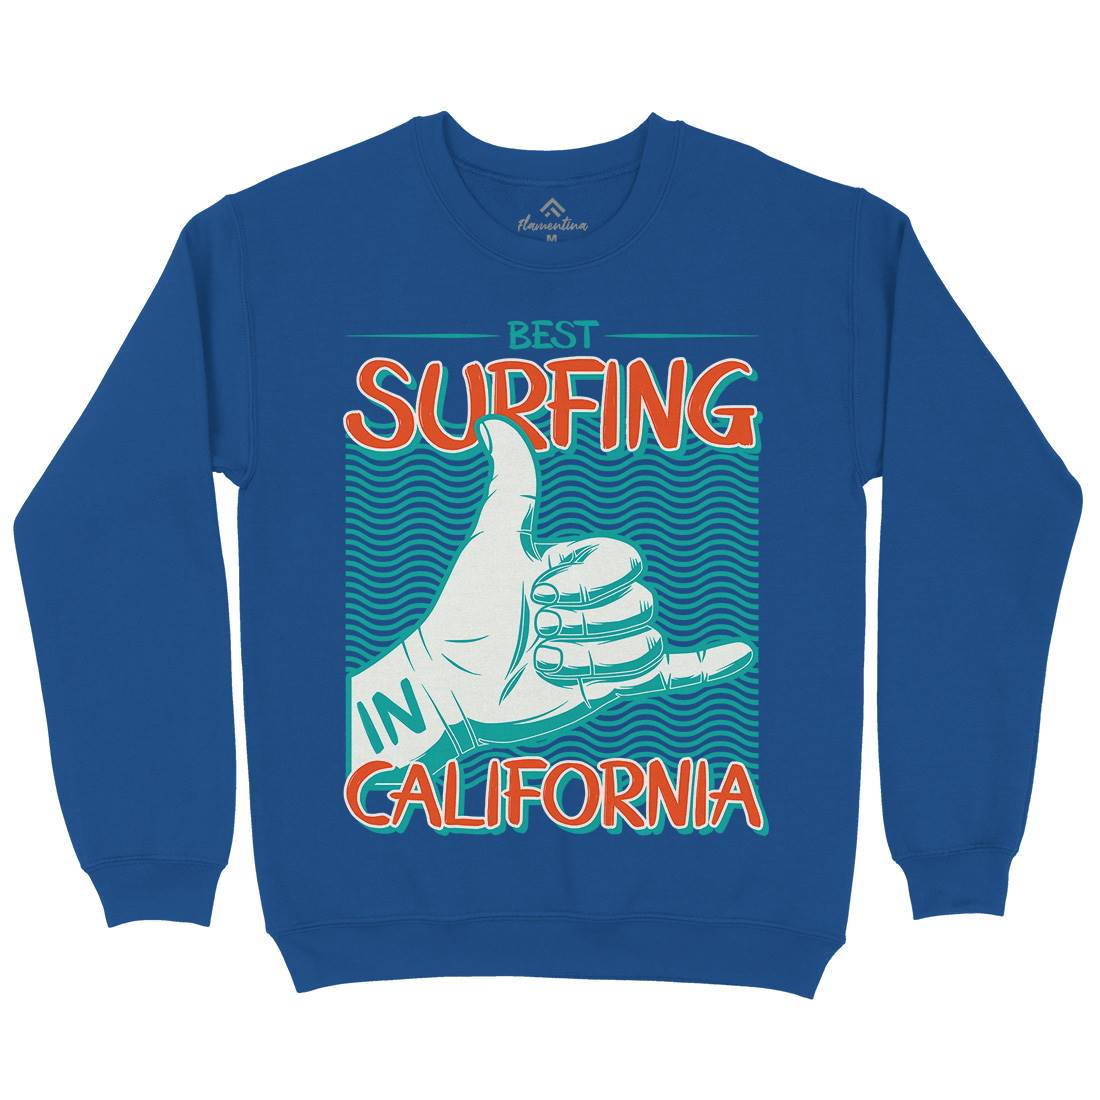 Best Surfing Kids Crew Neck Sweatshirt Surf D908